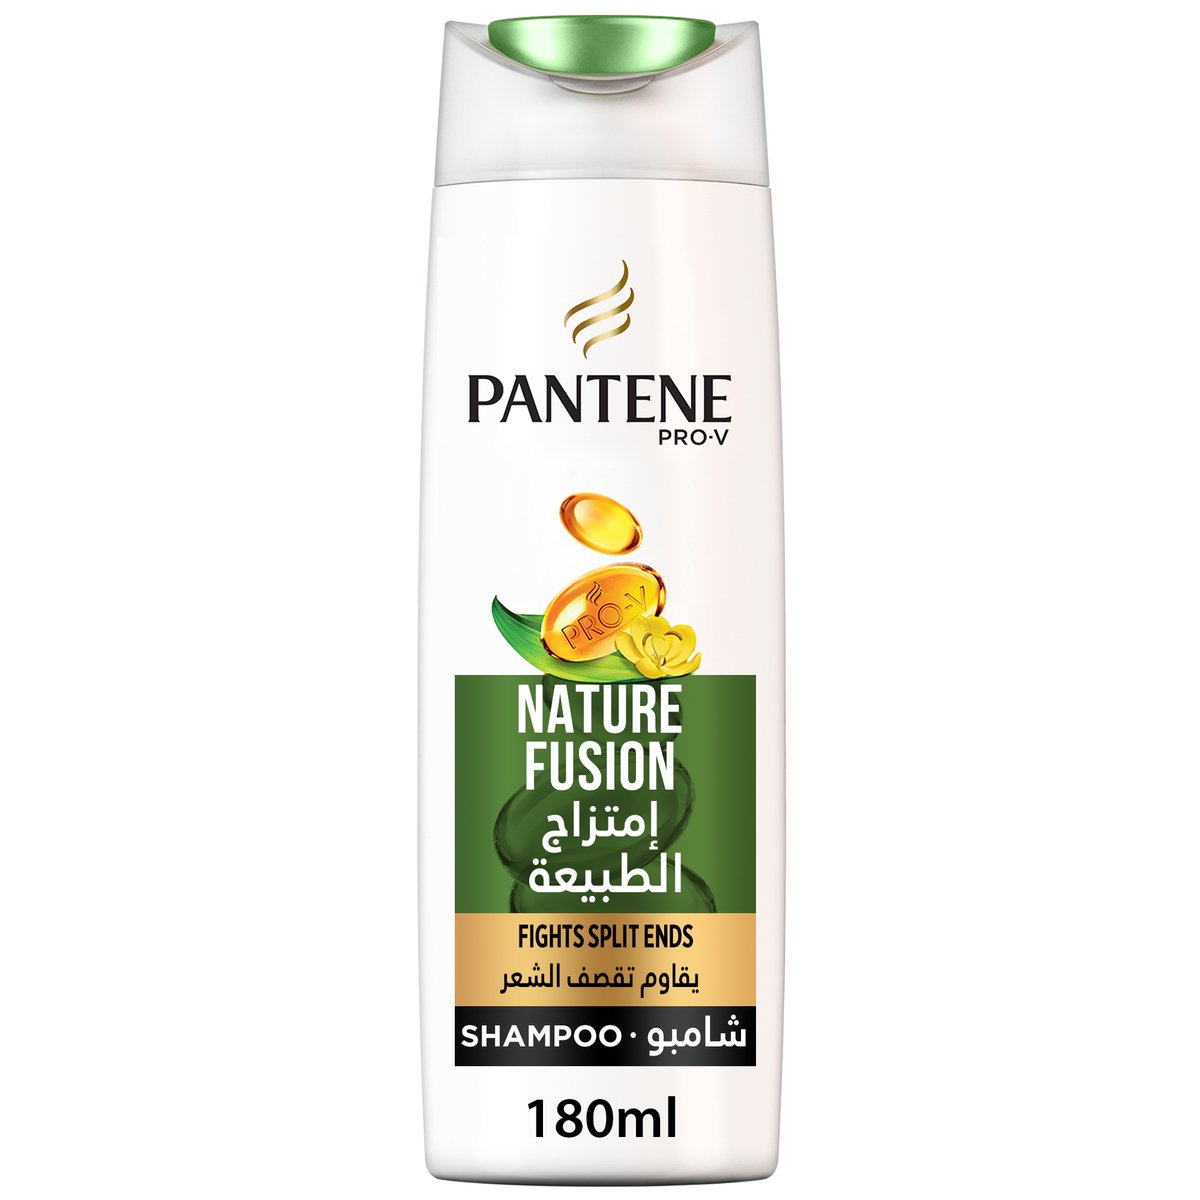 Pantene Pro-V Nature Fusion Shampoo 180 ml